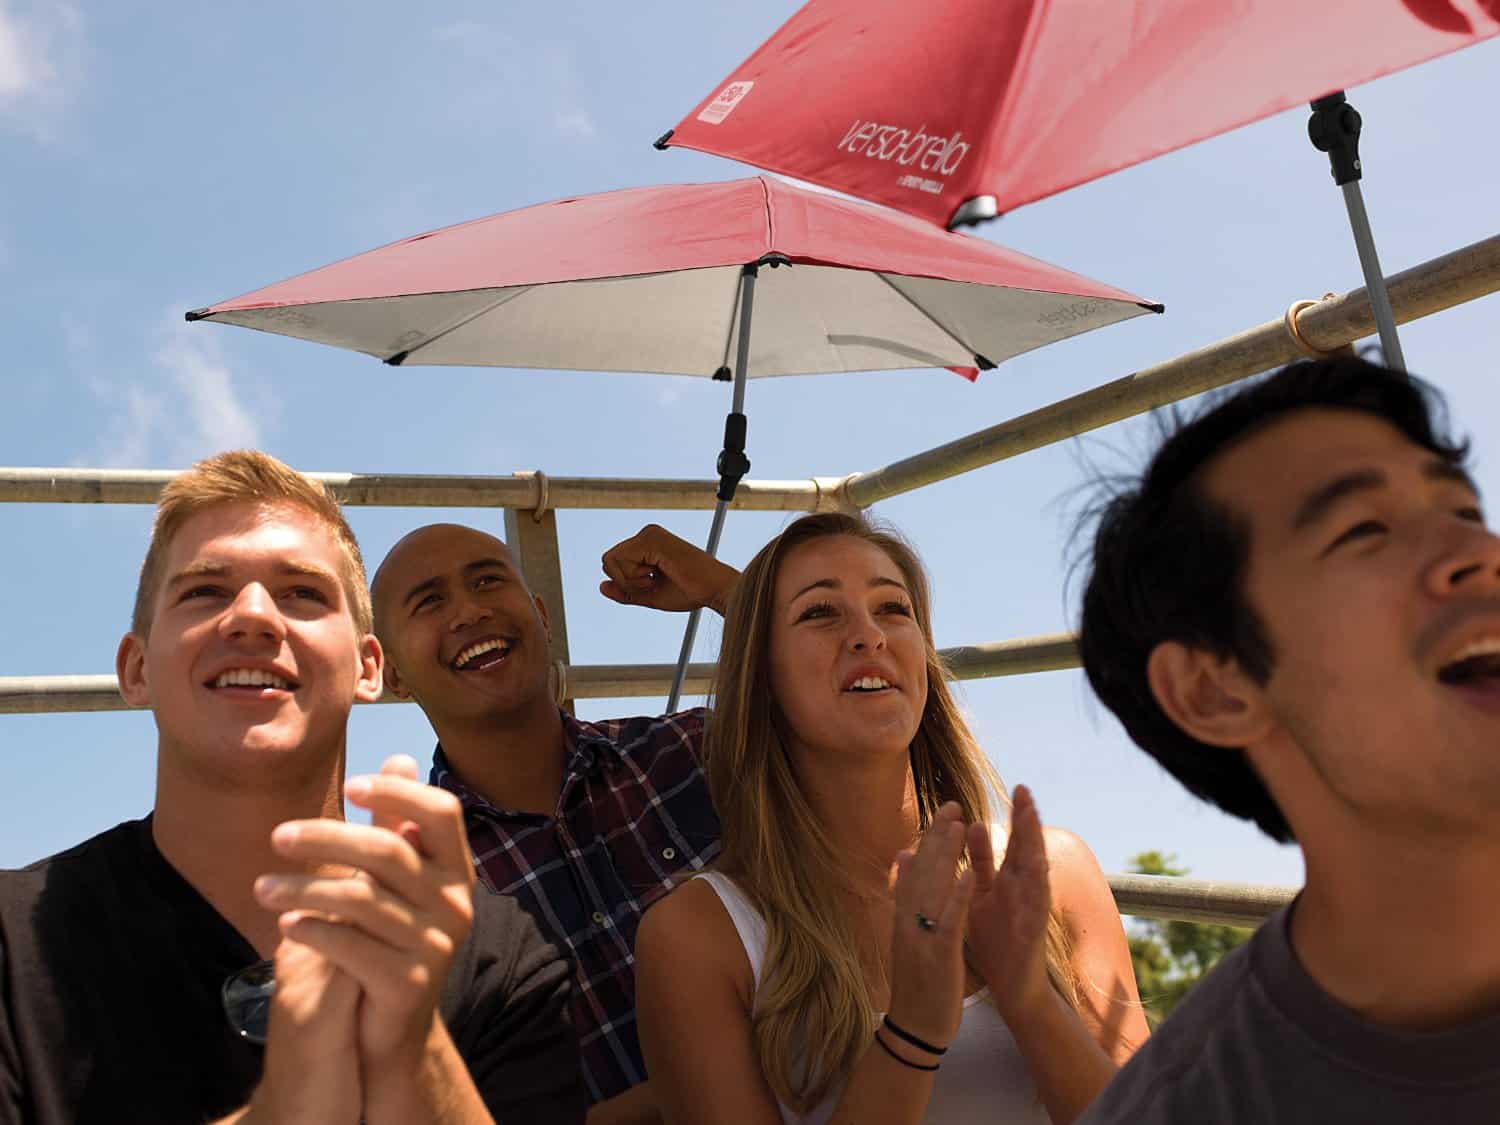 Sport-Brella Versa-Brella All Position Umbrella Portable Sun Shade for Outdoor Events